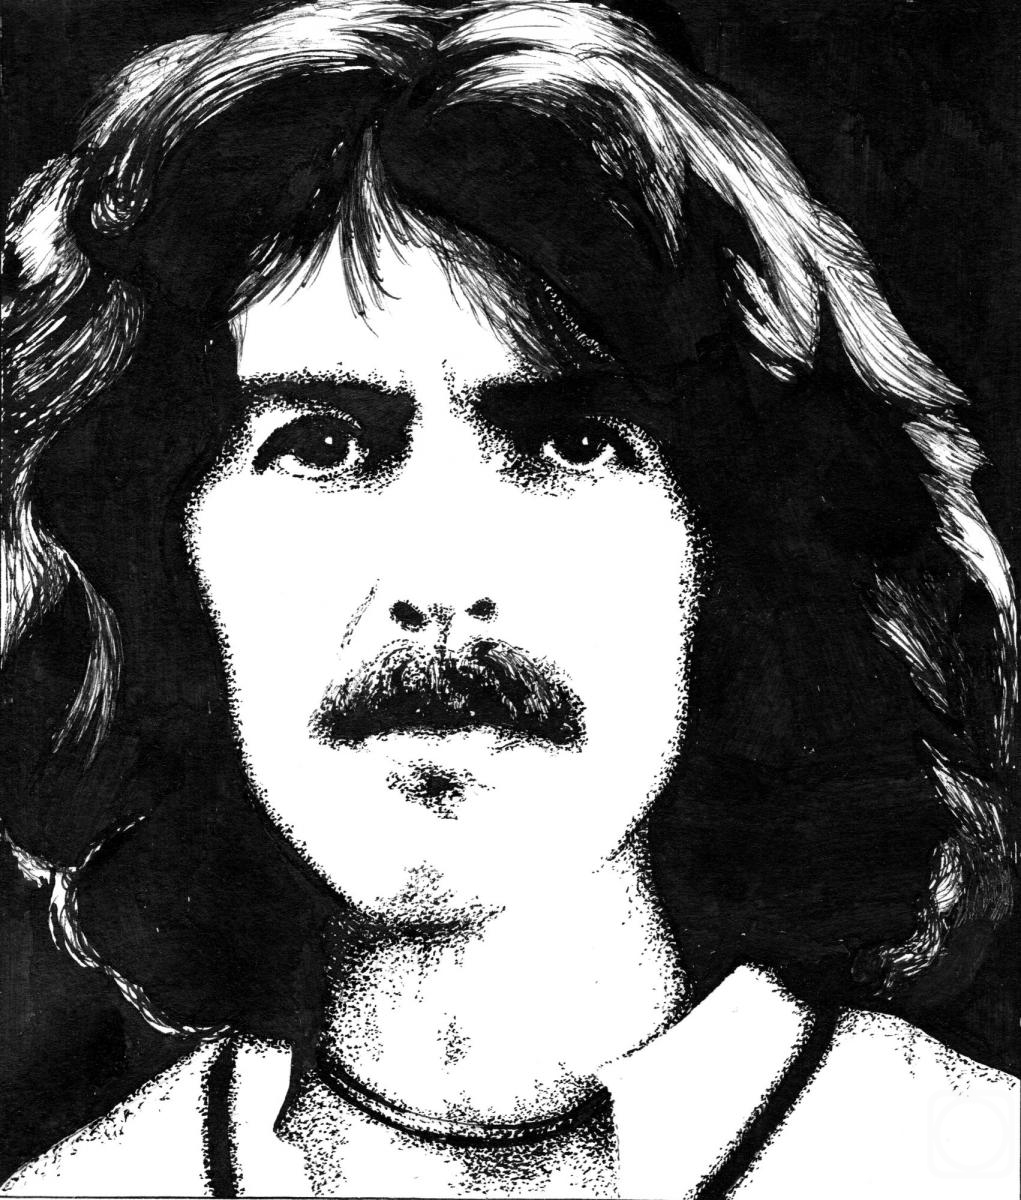 Abaimov Vladimir. George Harrison